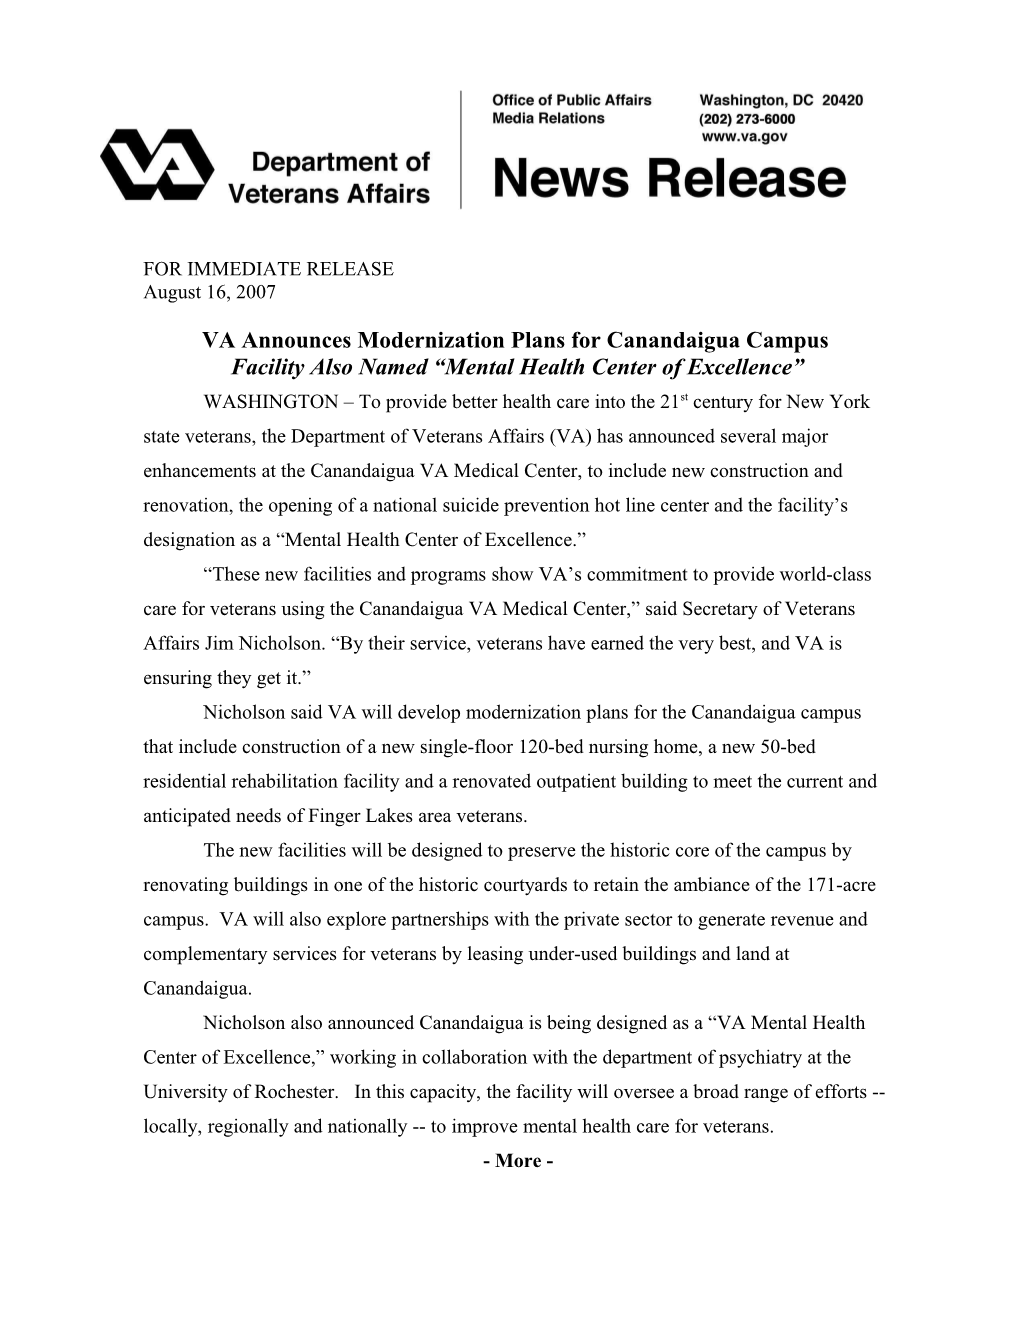 VA Announces Modernization Plans Forcanandaigua Campus